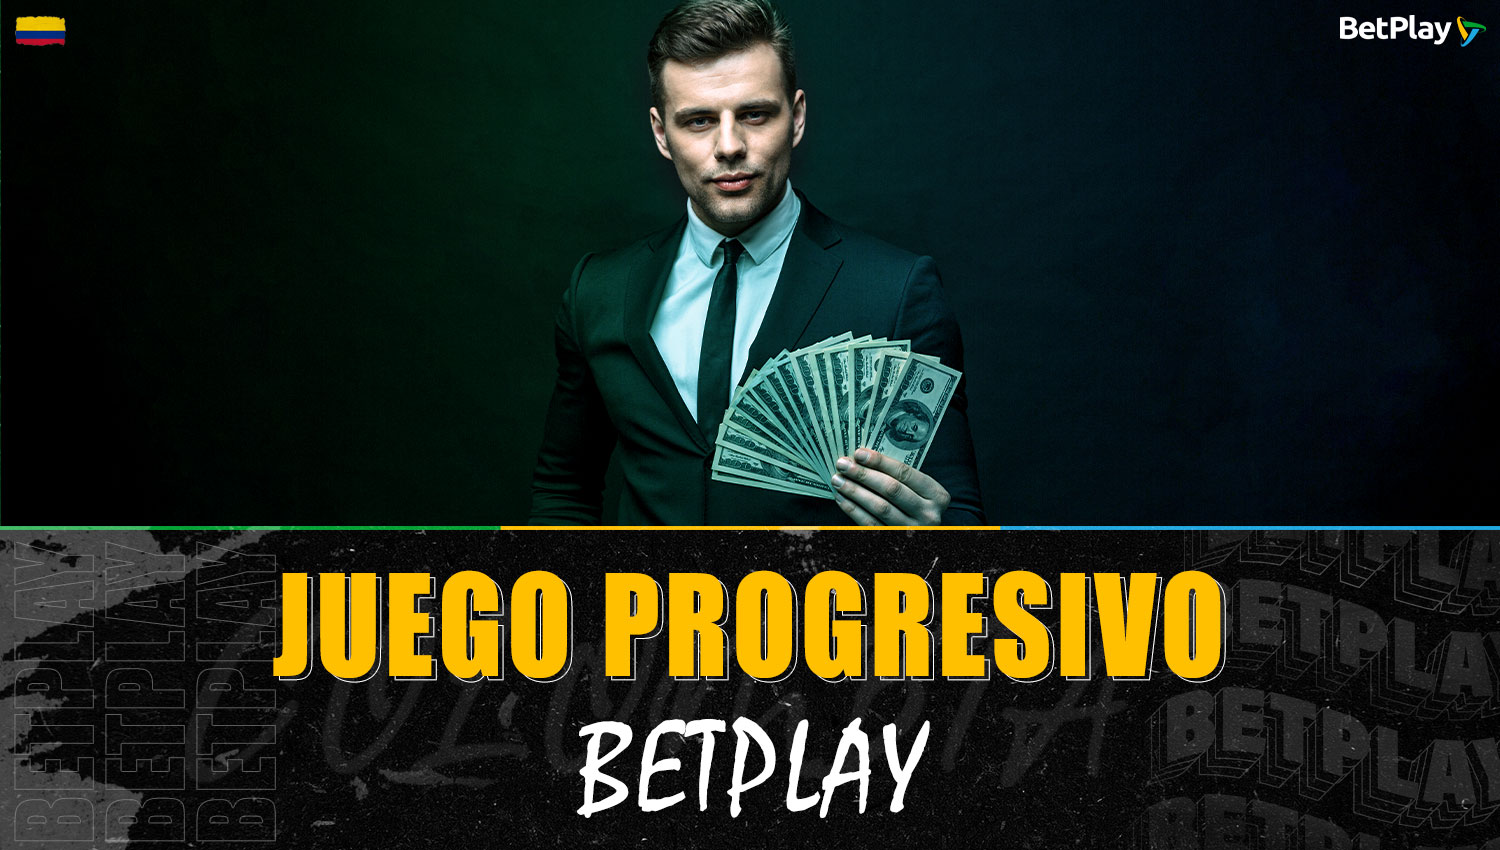 En la plataforma Betplay está disponible un juego progresivo para jugadores colombianos